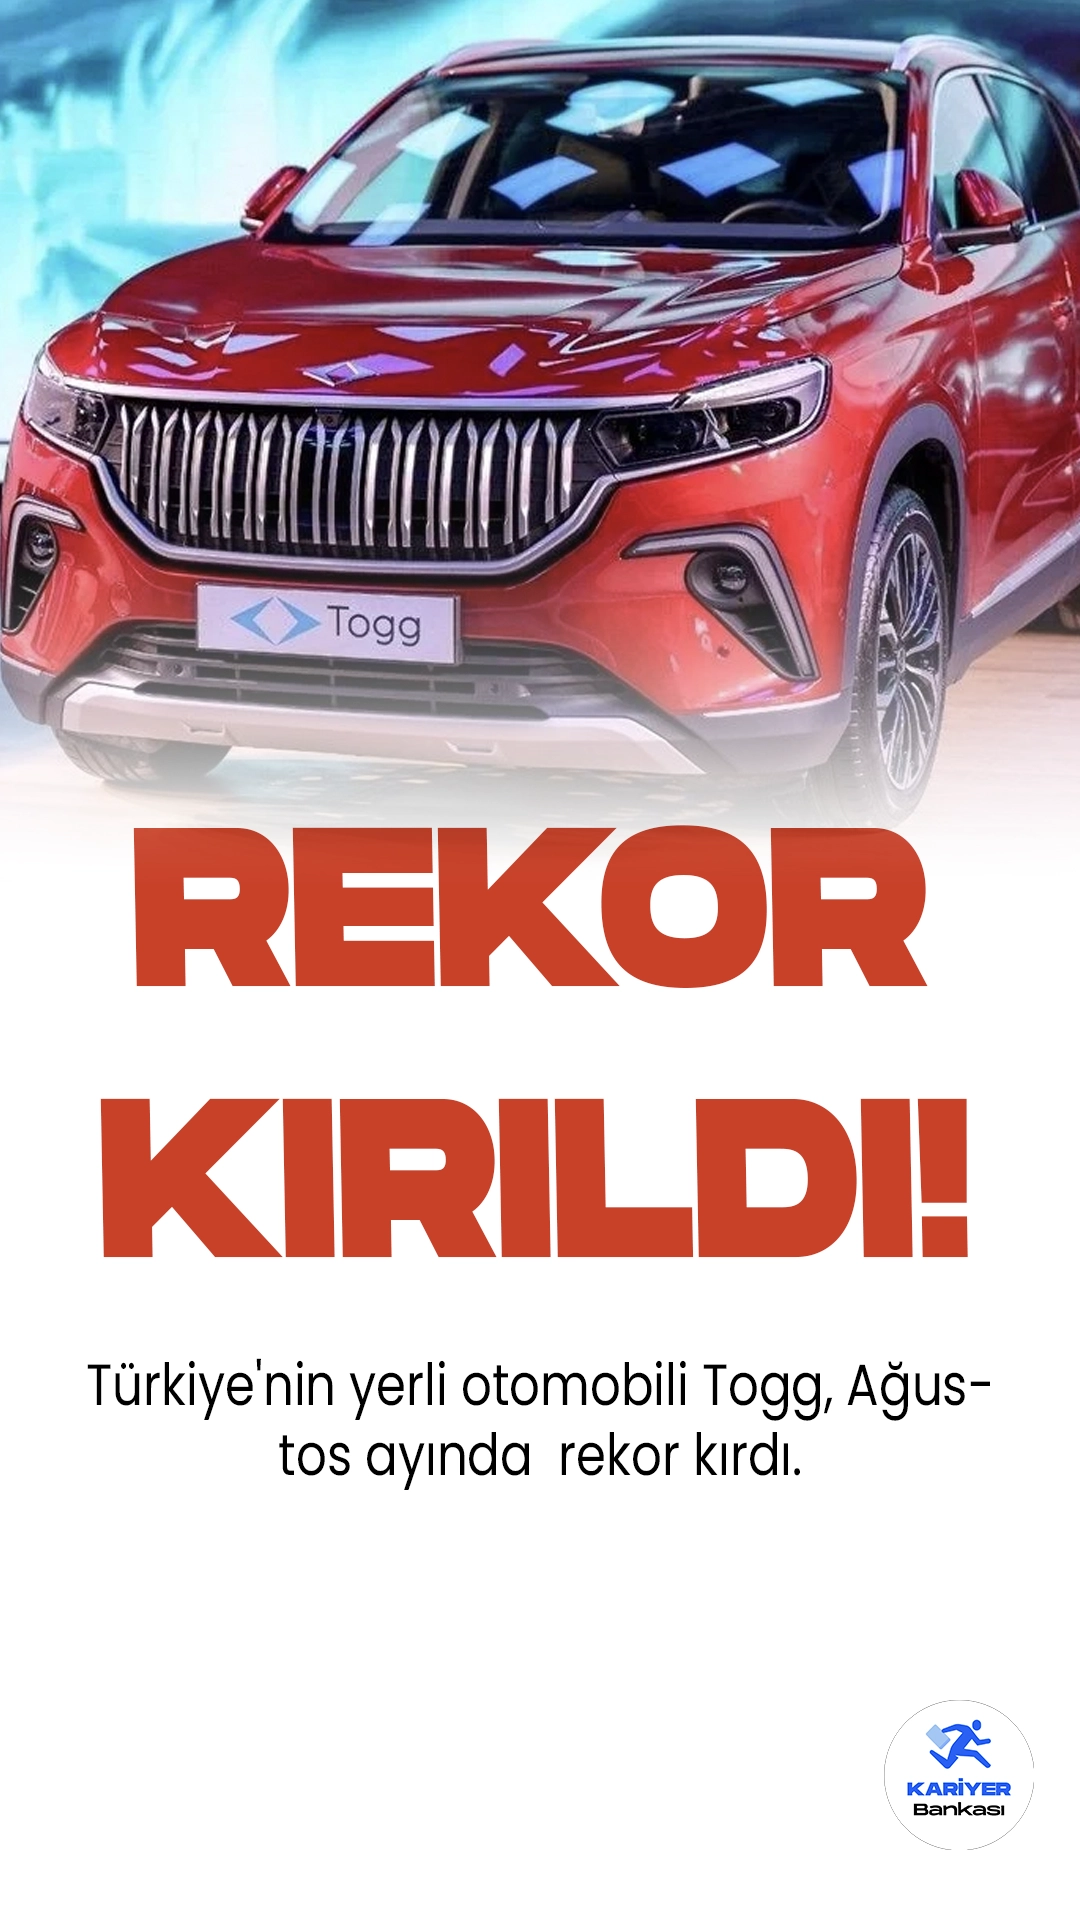 Türkiye'nin Yerli Otomobili Togg'dan Teslimat Rekoru!Türkiye'nin yerli otomobili Togg, Ağustos ayında 1.965 adet T10X modelini başarılı bir şekilde kullanıcılarına ulaştırdı.